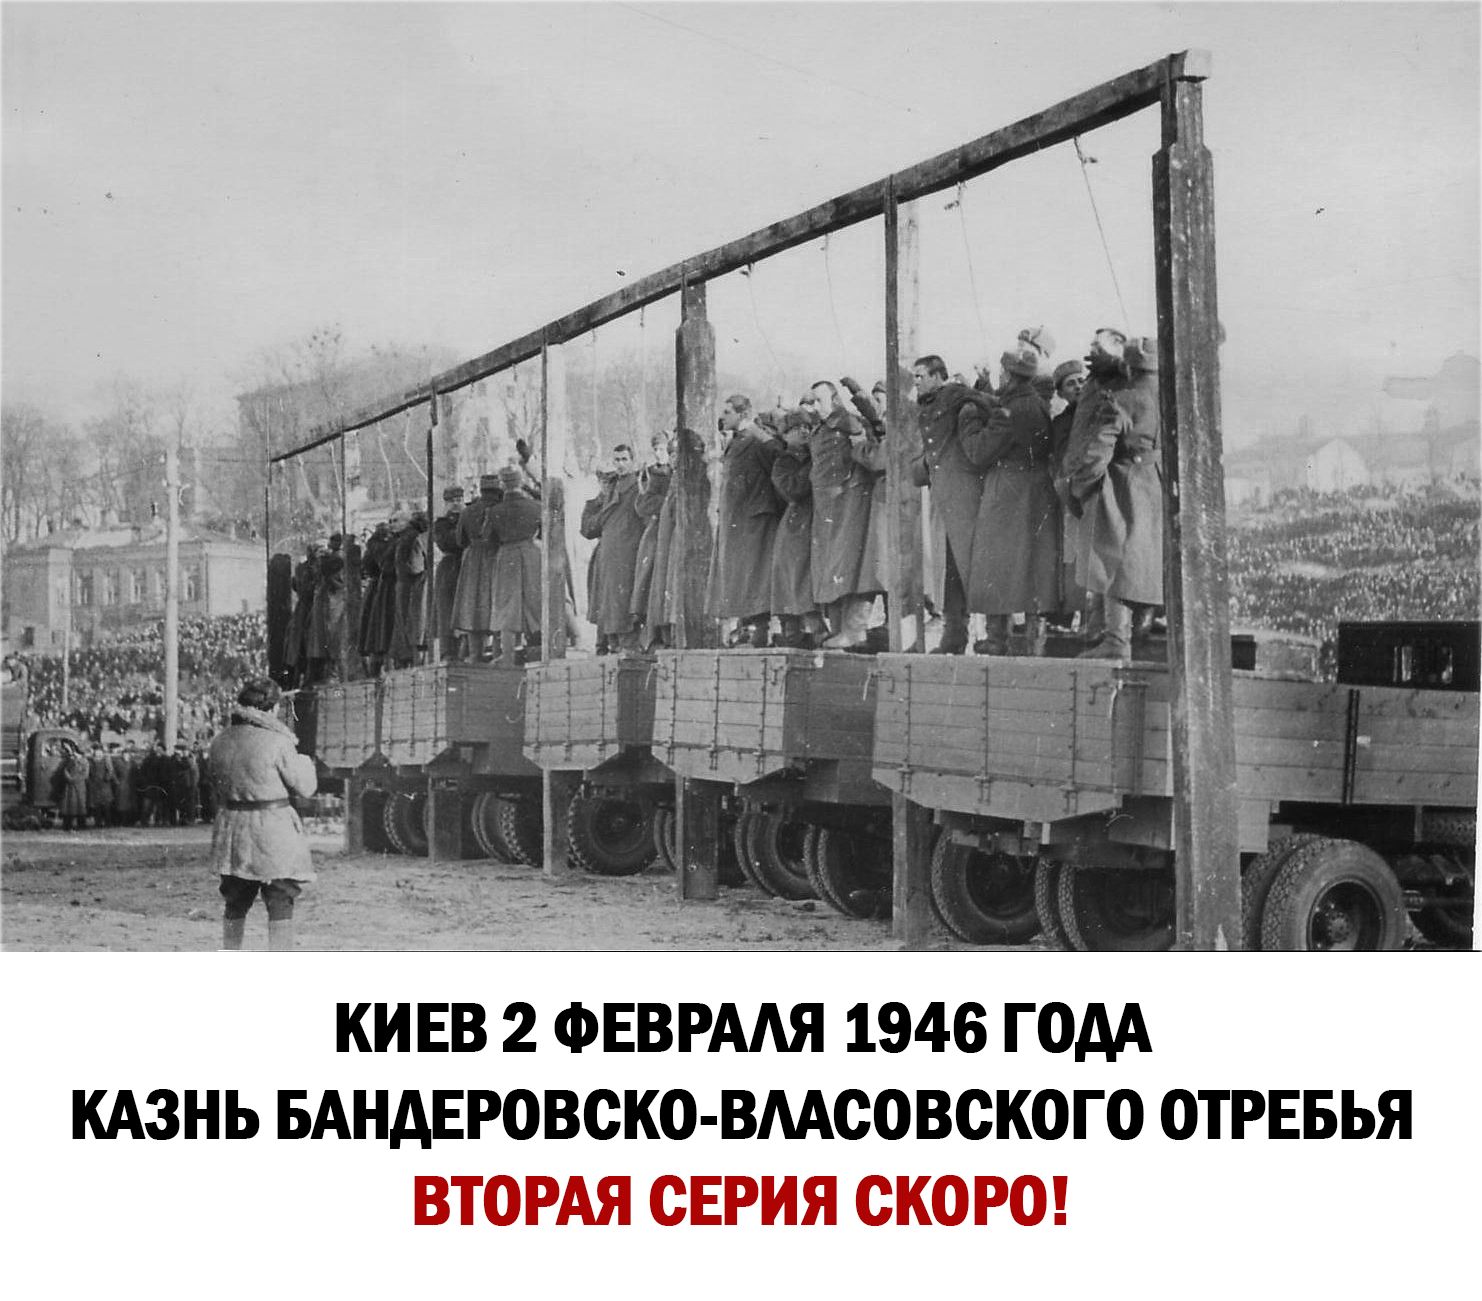 КИЕВ 2 ФЕВРААЯ 1946 ГОДА КАЗНЬ БАНАЕРОВСКО ВМСОВСКОГО ОТРЕБЬЯ